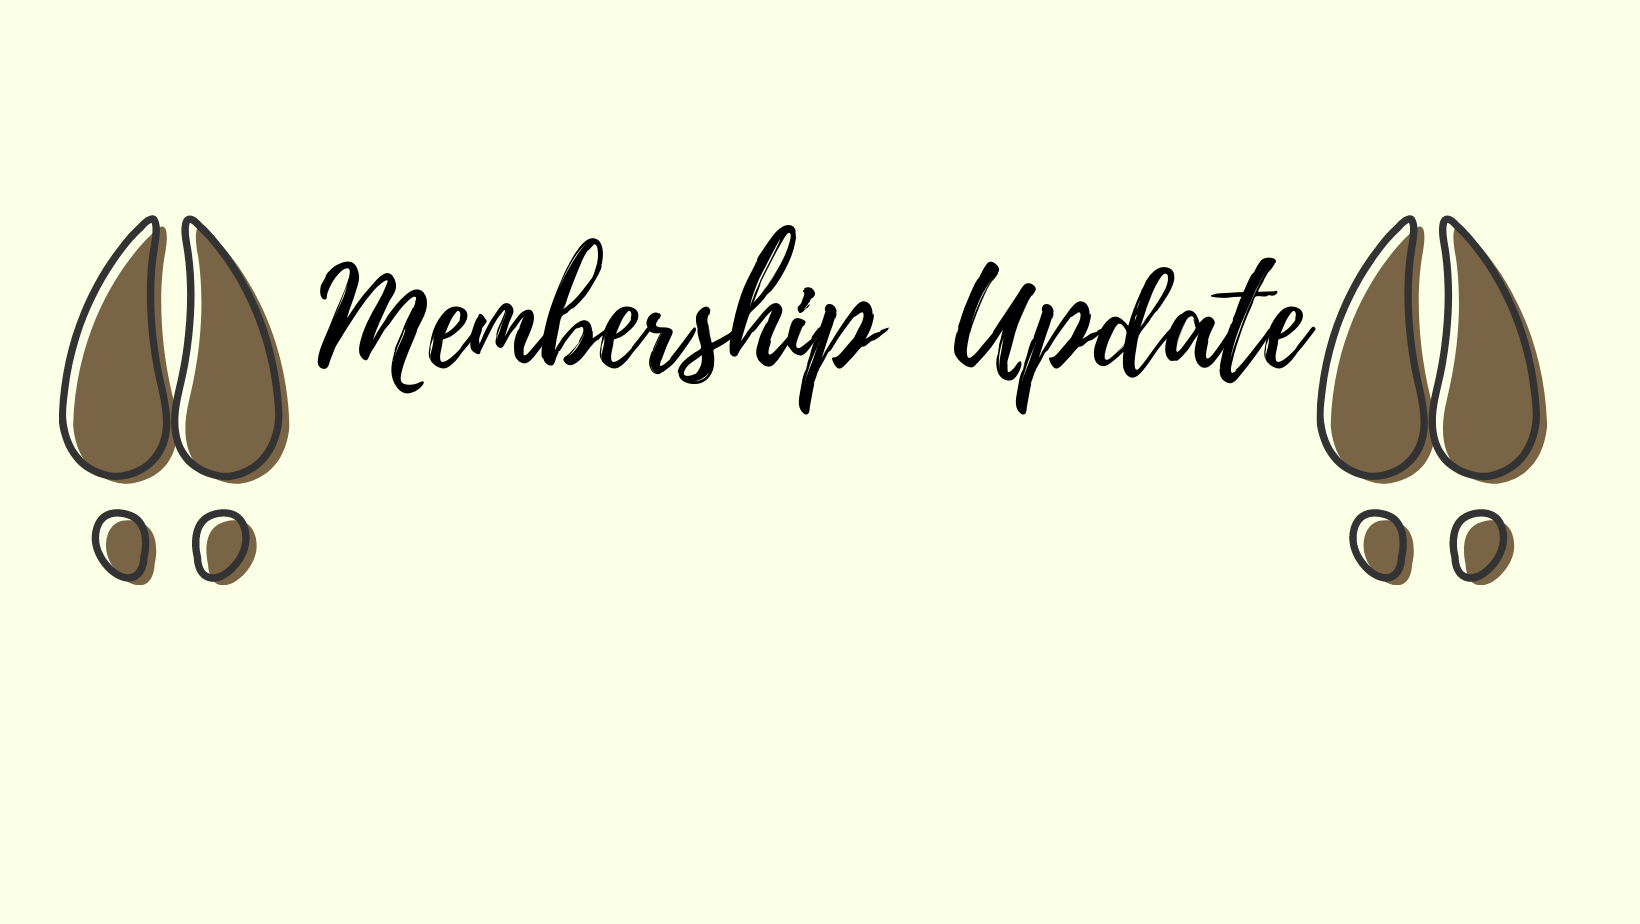 New Membership